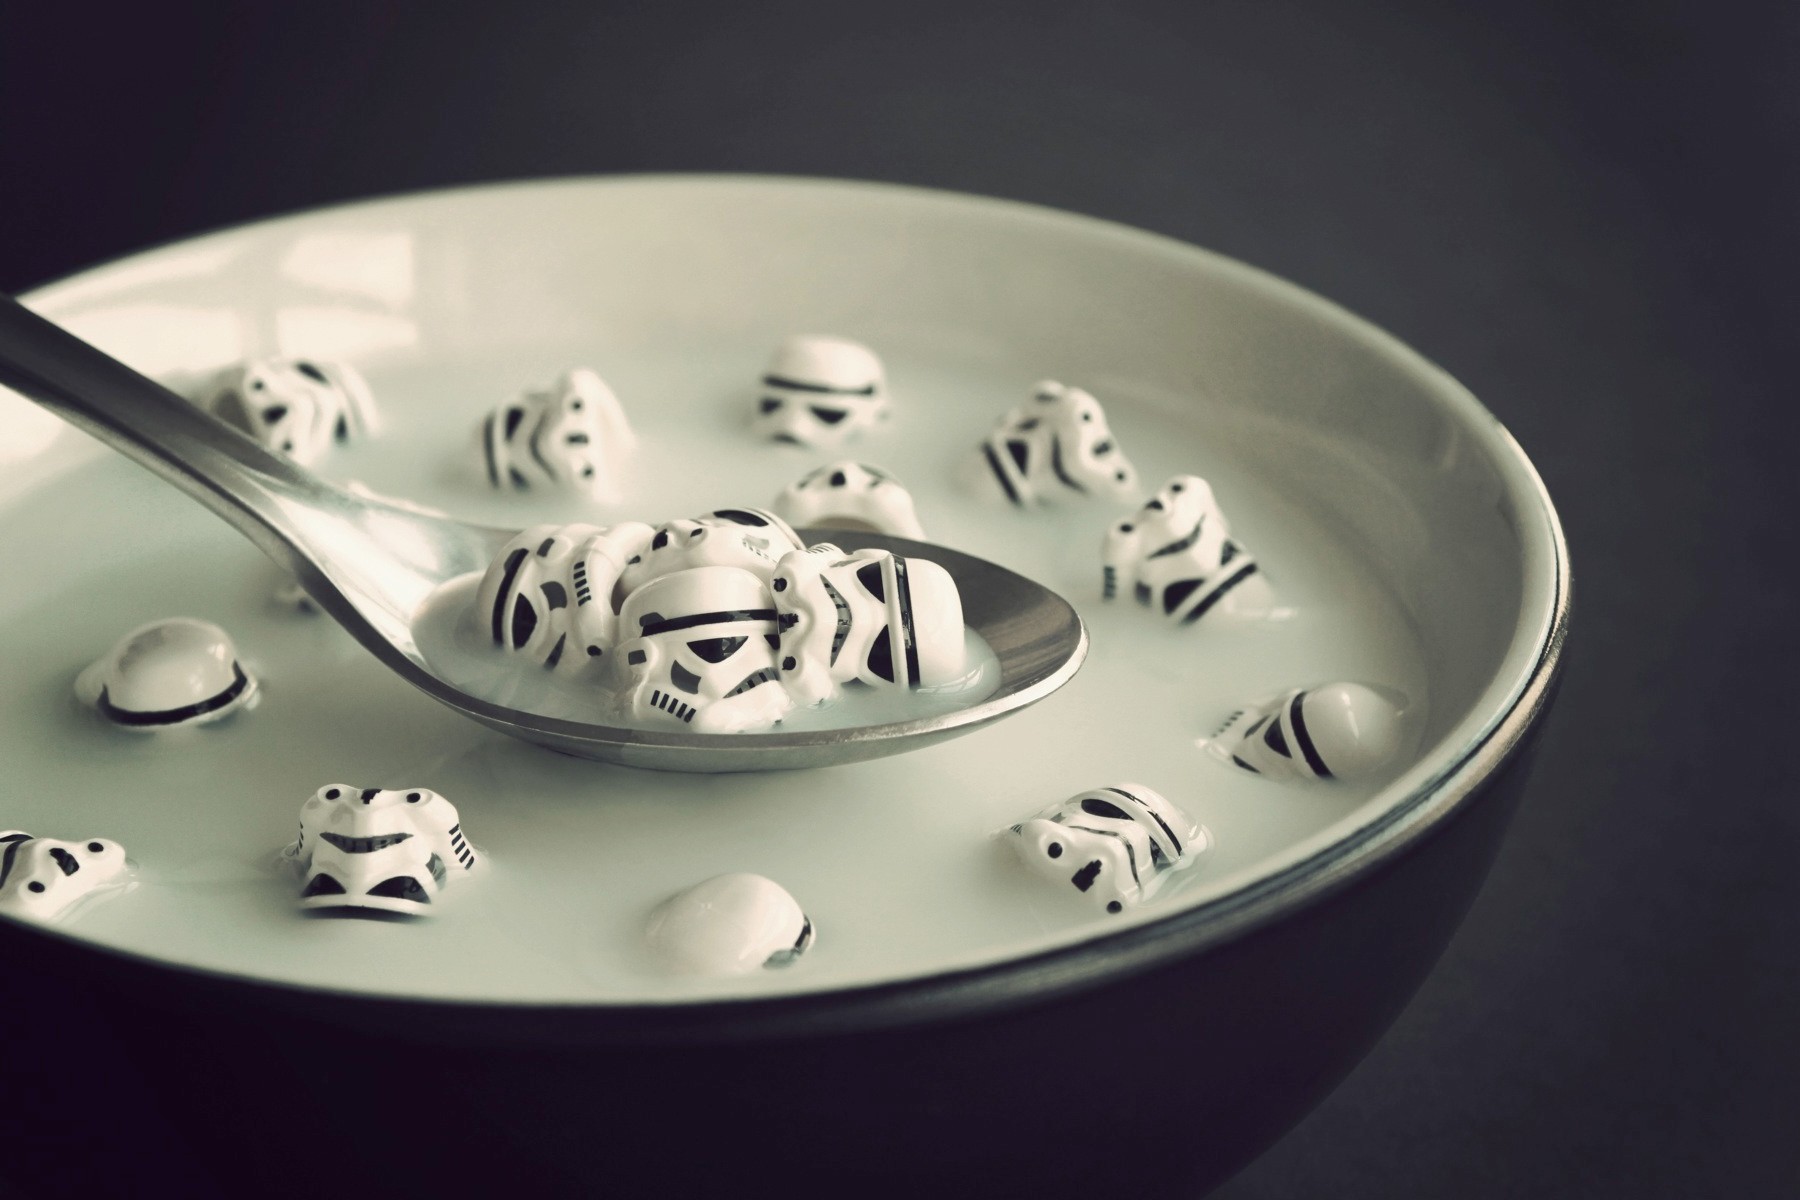 General 1800x1200 Star Wars Star Wars Humor spoon bowls Imperial Stormtrooper stormtrooper